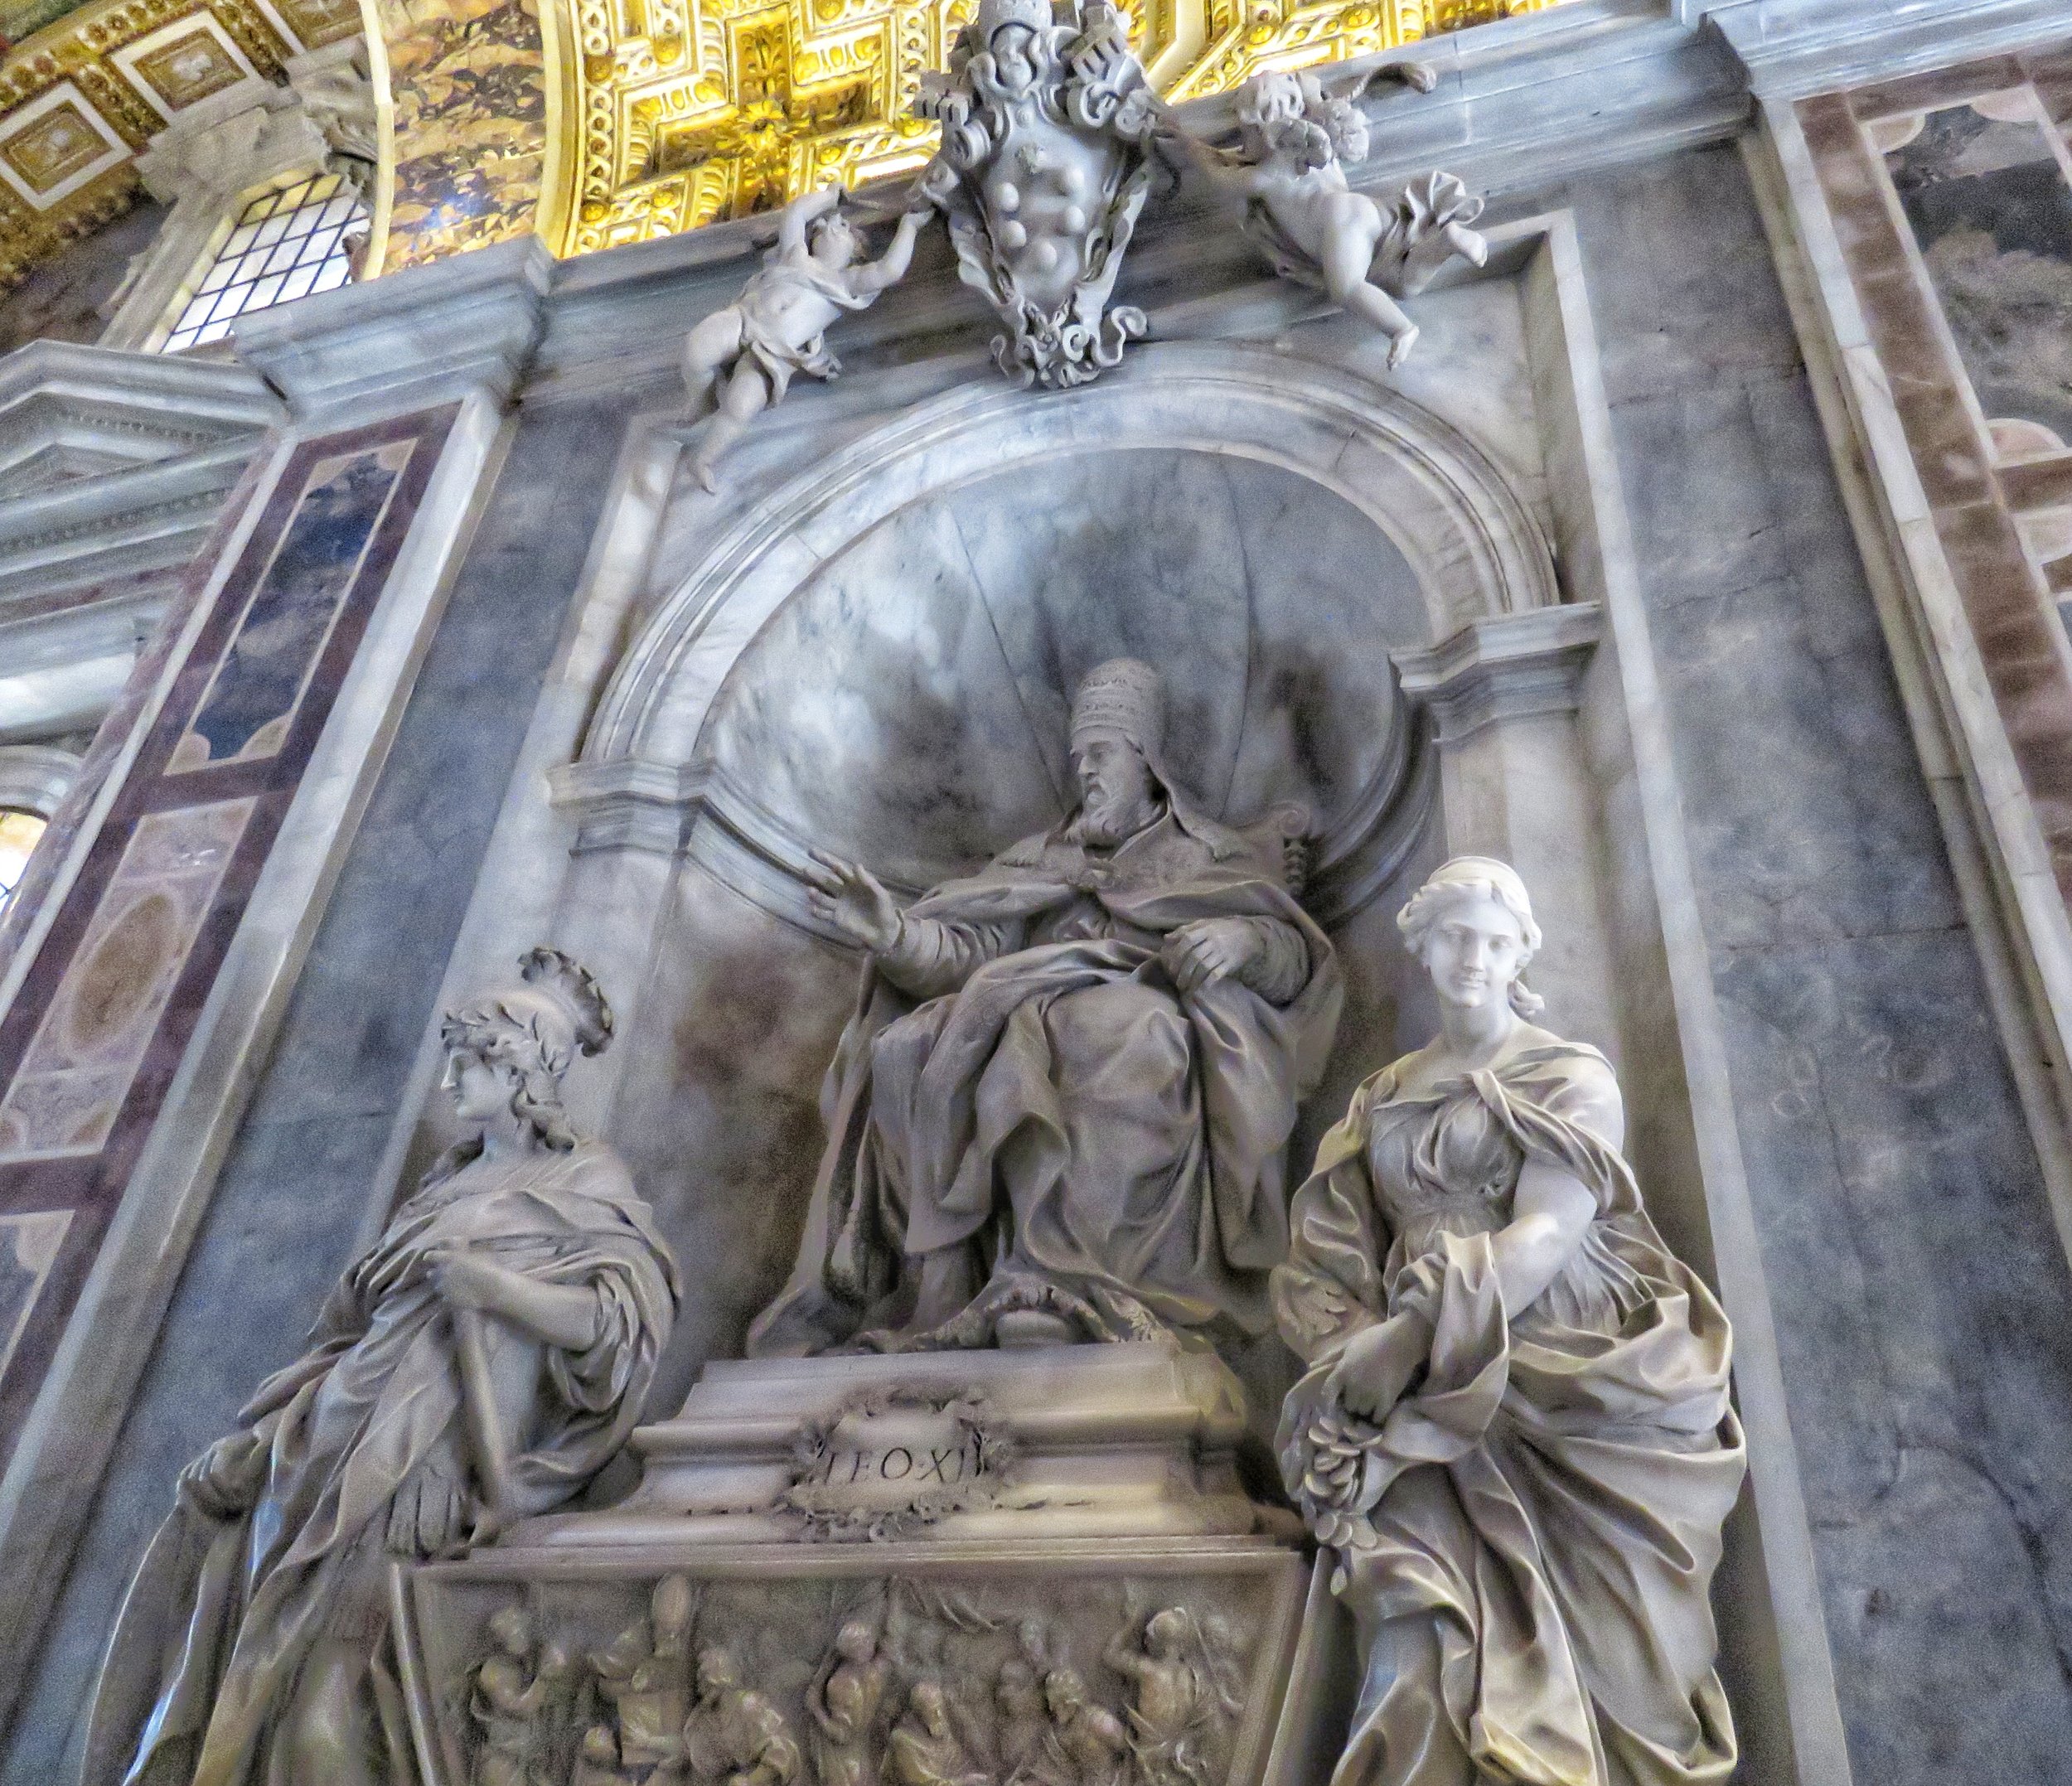 Sculpture inside St. Peter's Basilica